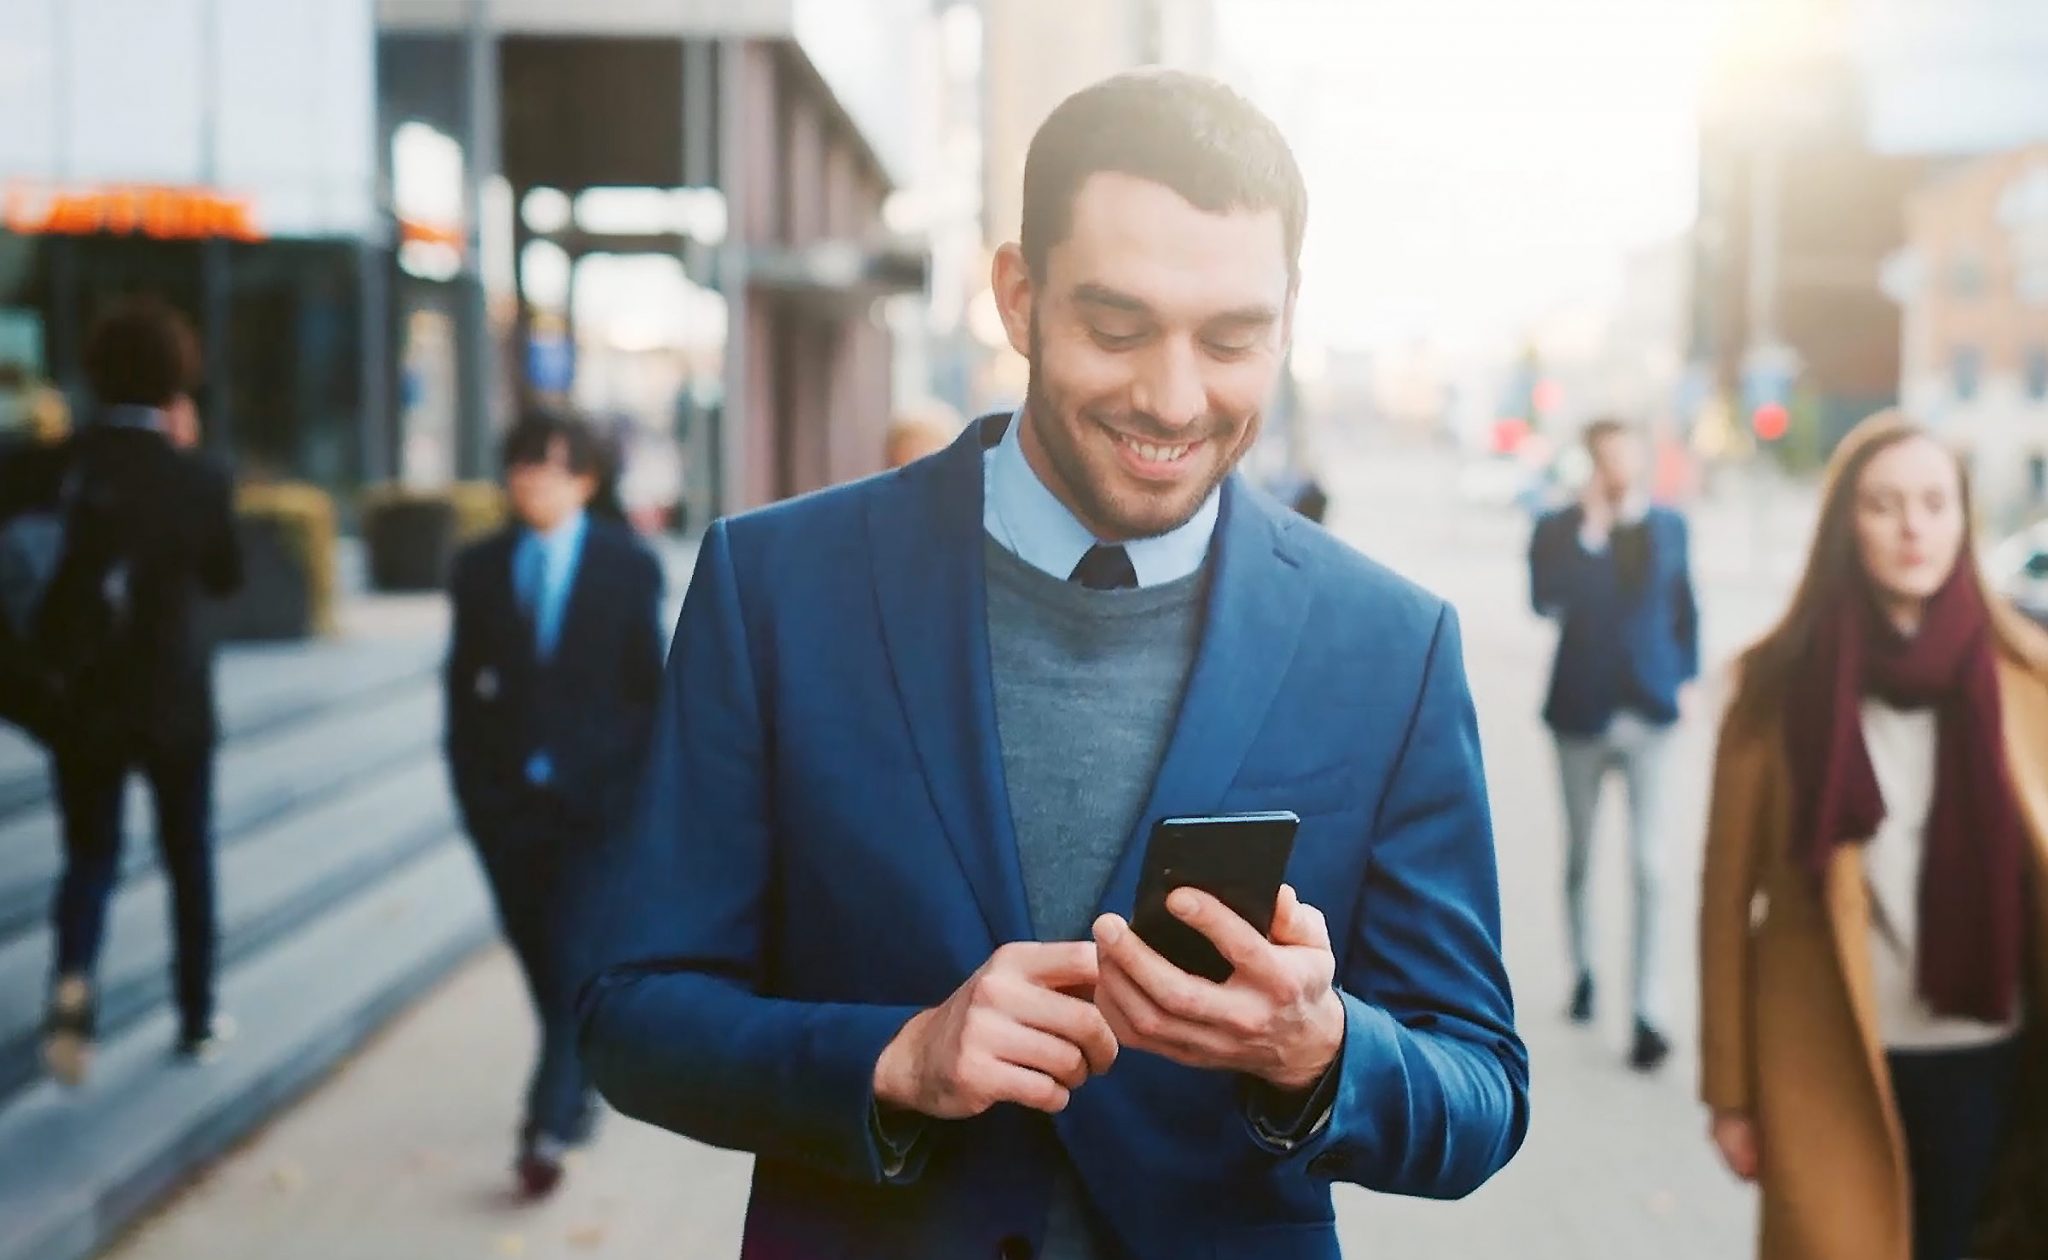 Auf einer belebten Straße sieht ein Mann auf sein Telefon und lächelt.